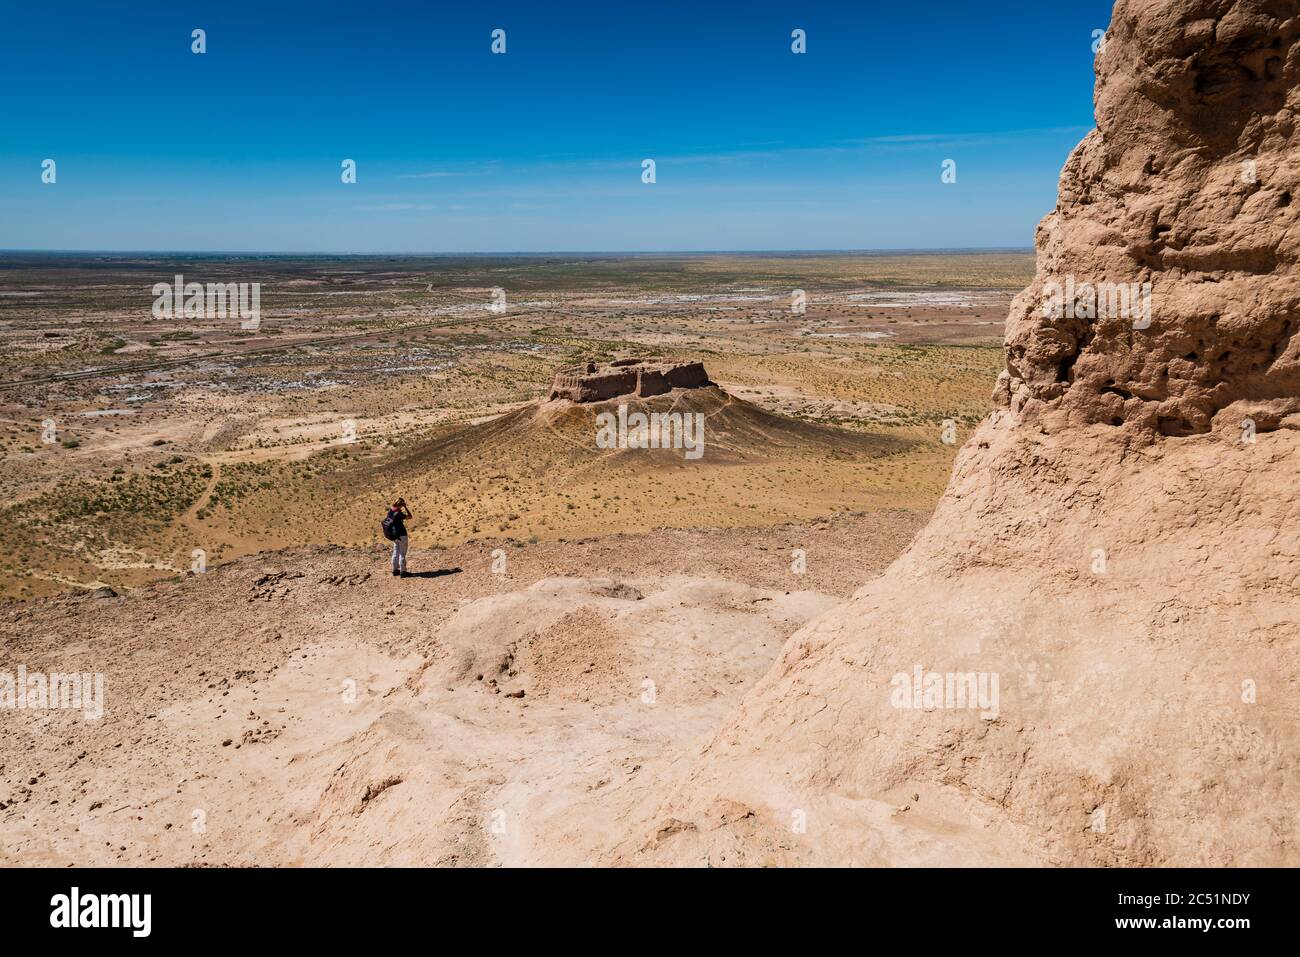 Zentralasien, Usbekistan die größten Ruinen Burgen des alten Khorezm – Ayaz - Kala Stockfoto